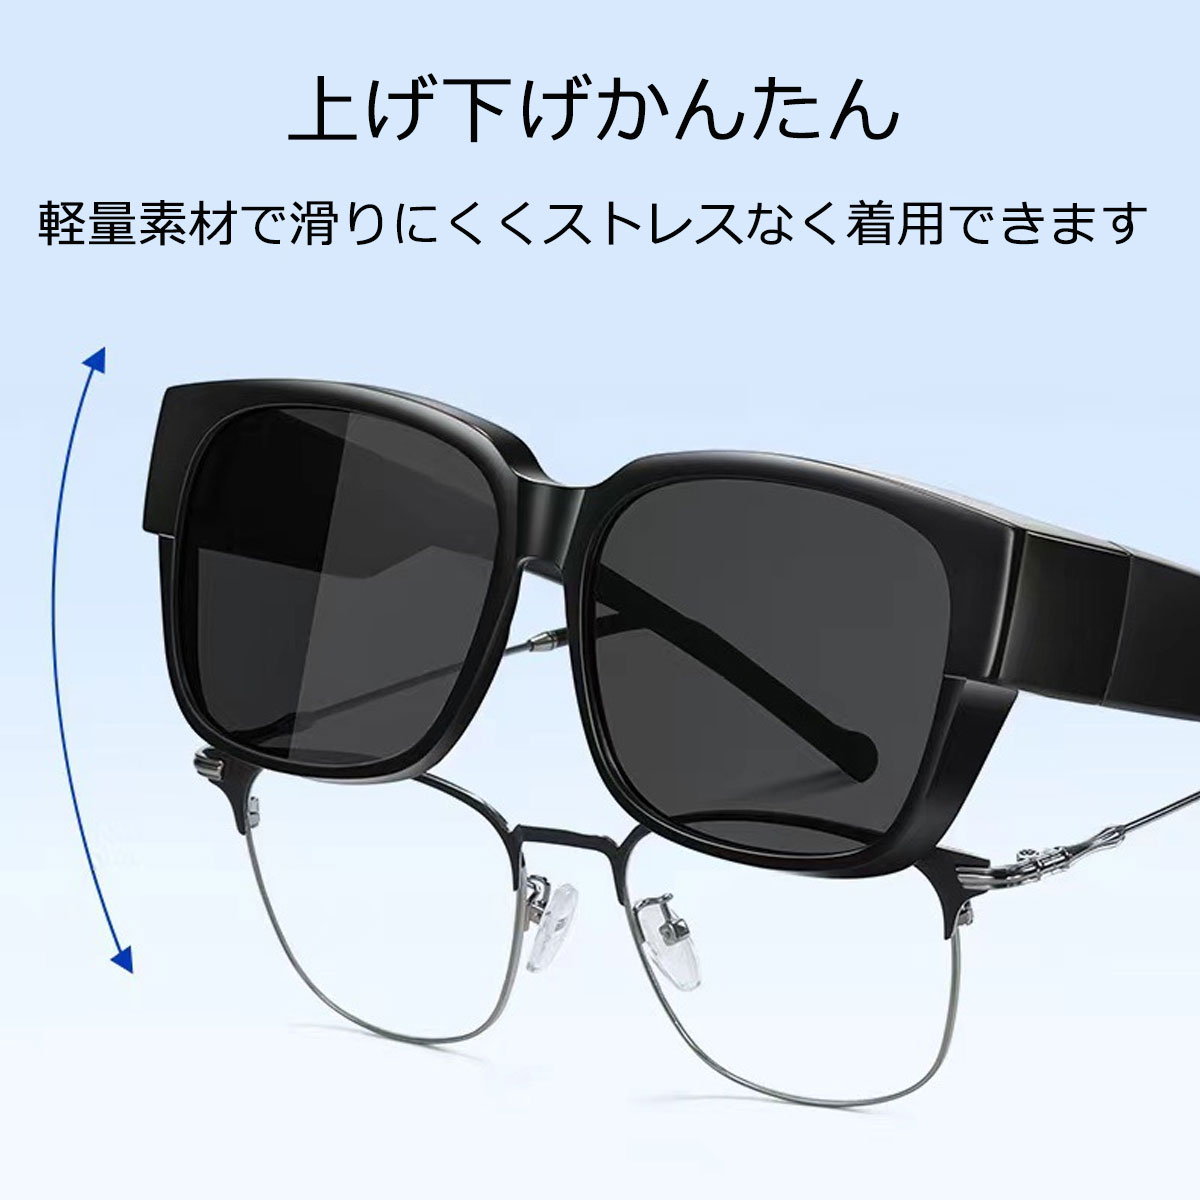  солнцезащитные очки поляризованный свет over солнцезащитные очки over стакан очки. сверху очки очки мужской женский рыбалка 